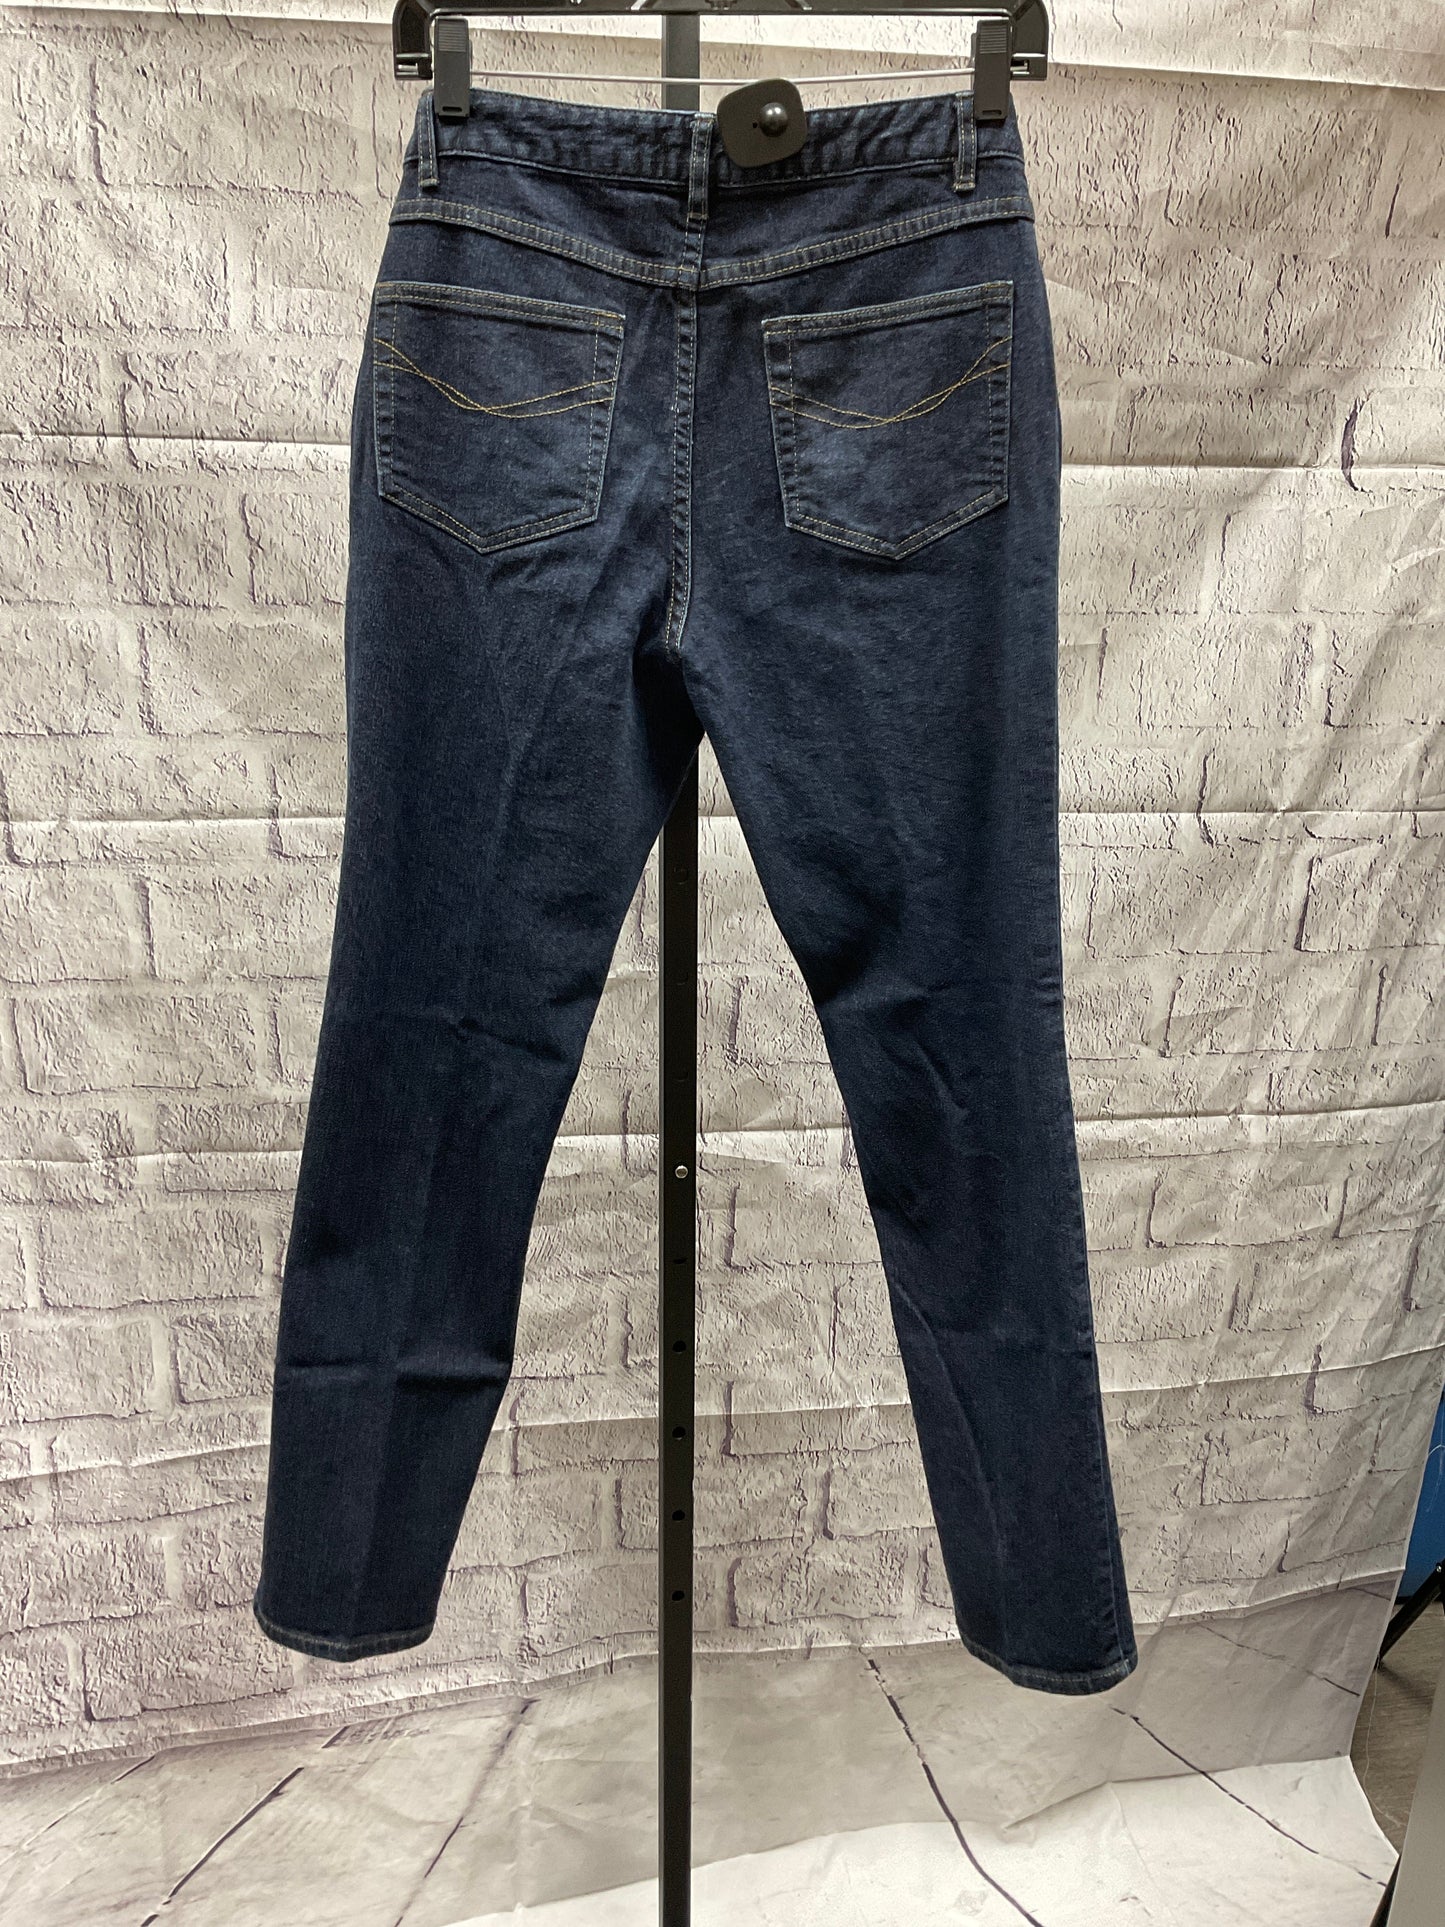 Jeans Skinny By J. Jill  Size: 10